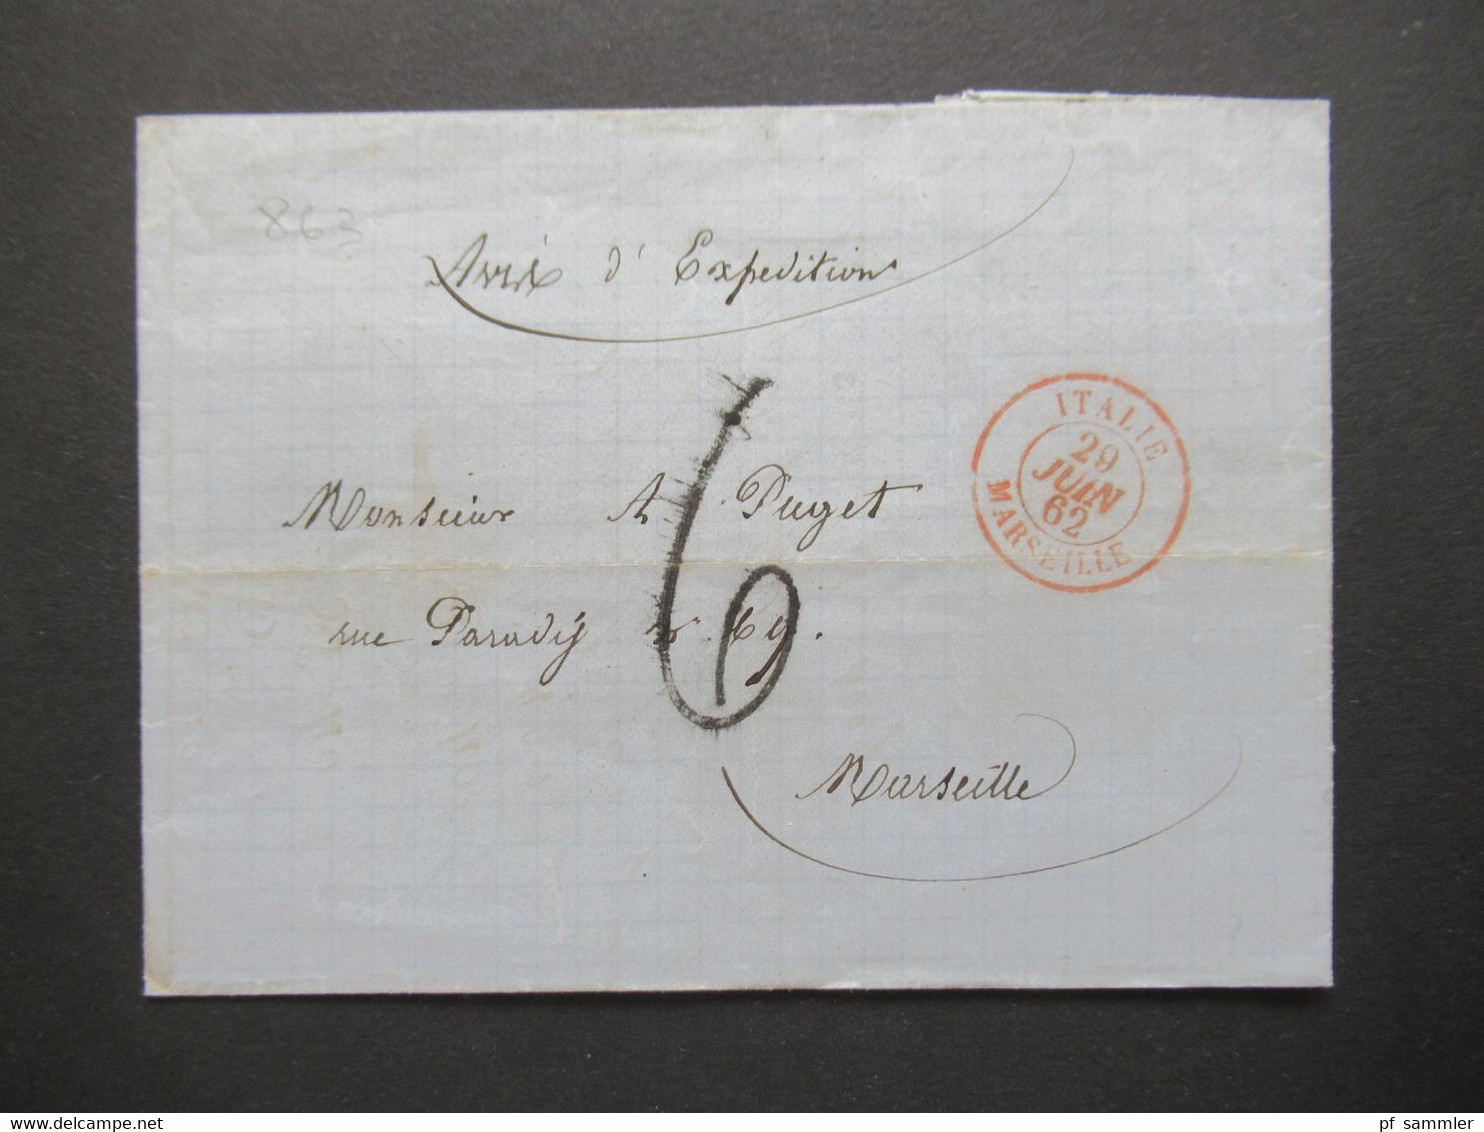 Italien 1862 Faltbrief Mit Inhalt / Auslandsbrief San Remo - Marseille Handschriftlicher Vermerk Avis D'Expedition - Poststempel